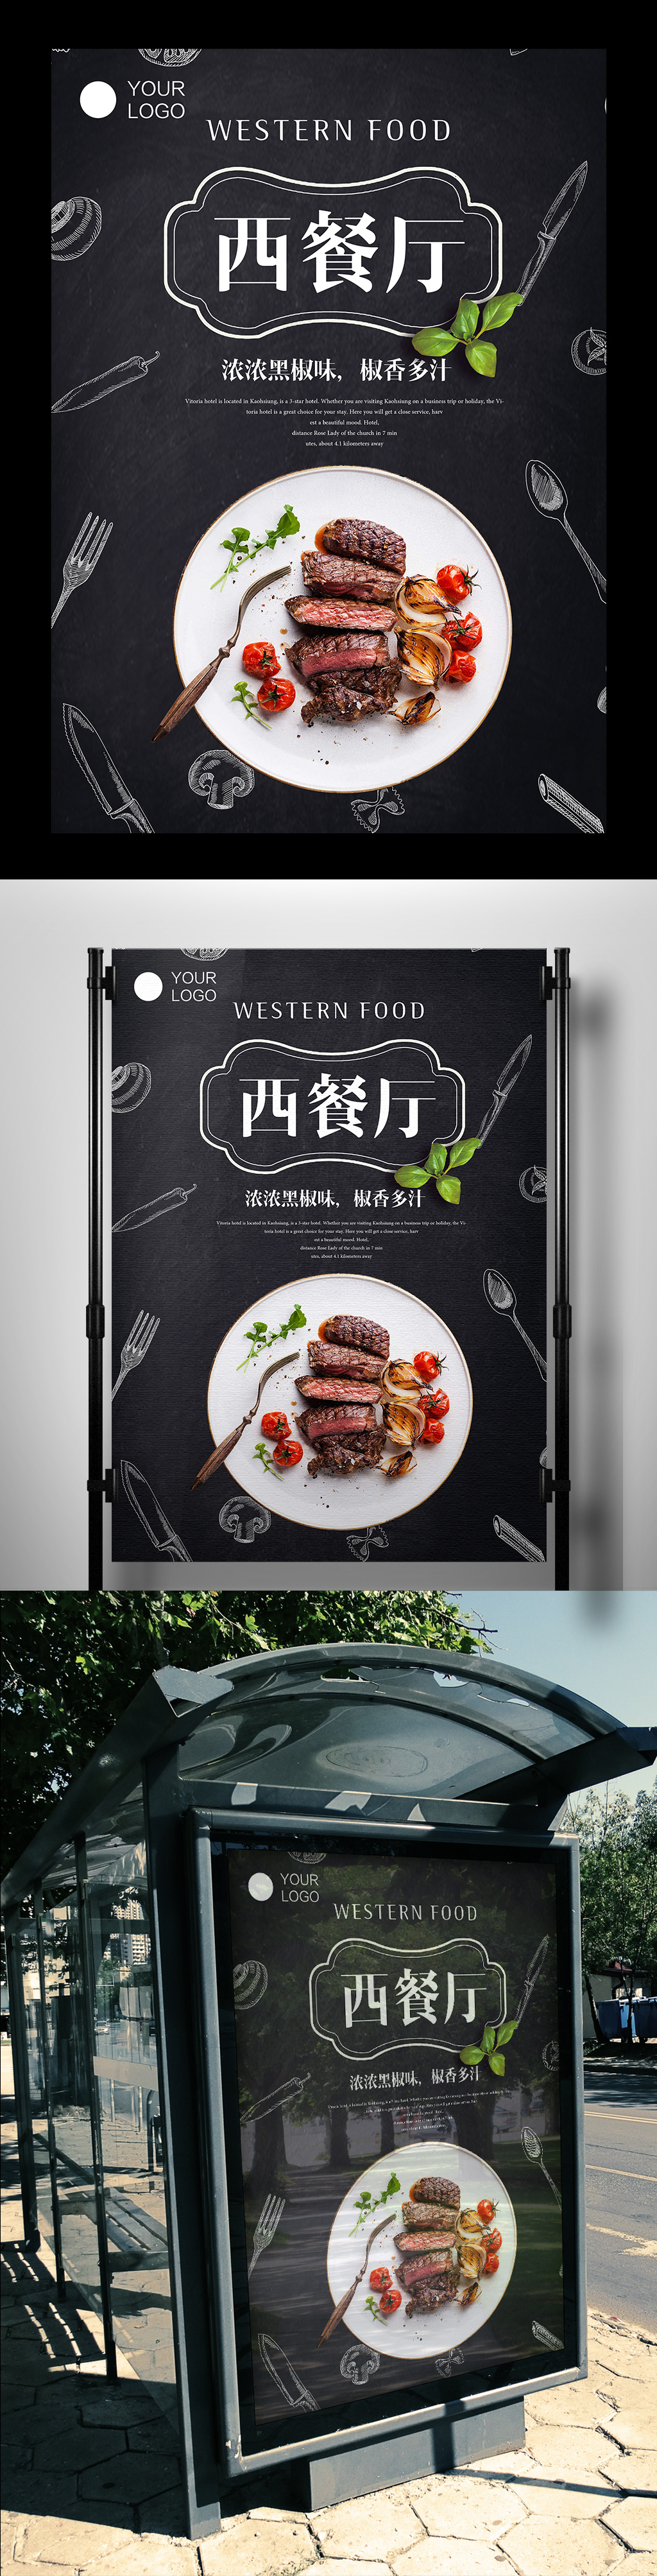 黑色背景大方经典美食西餐宣传海报图片